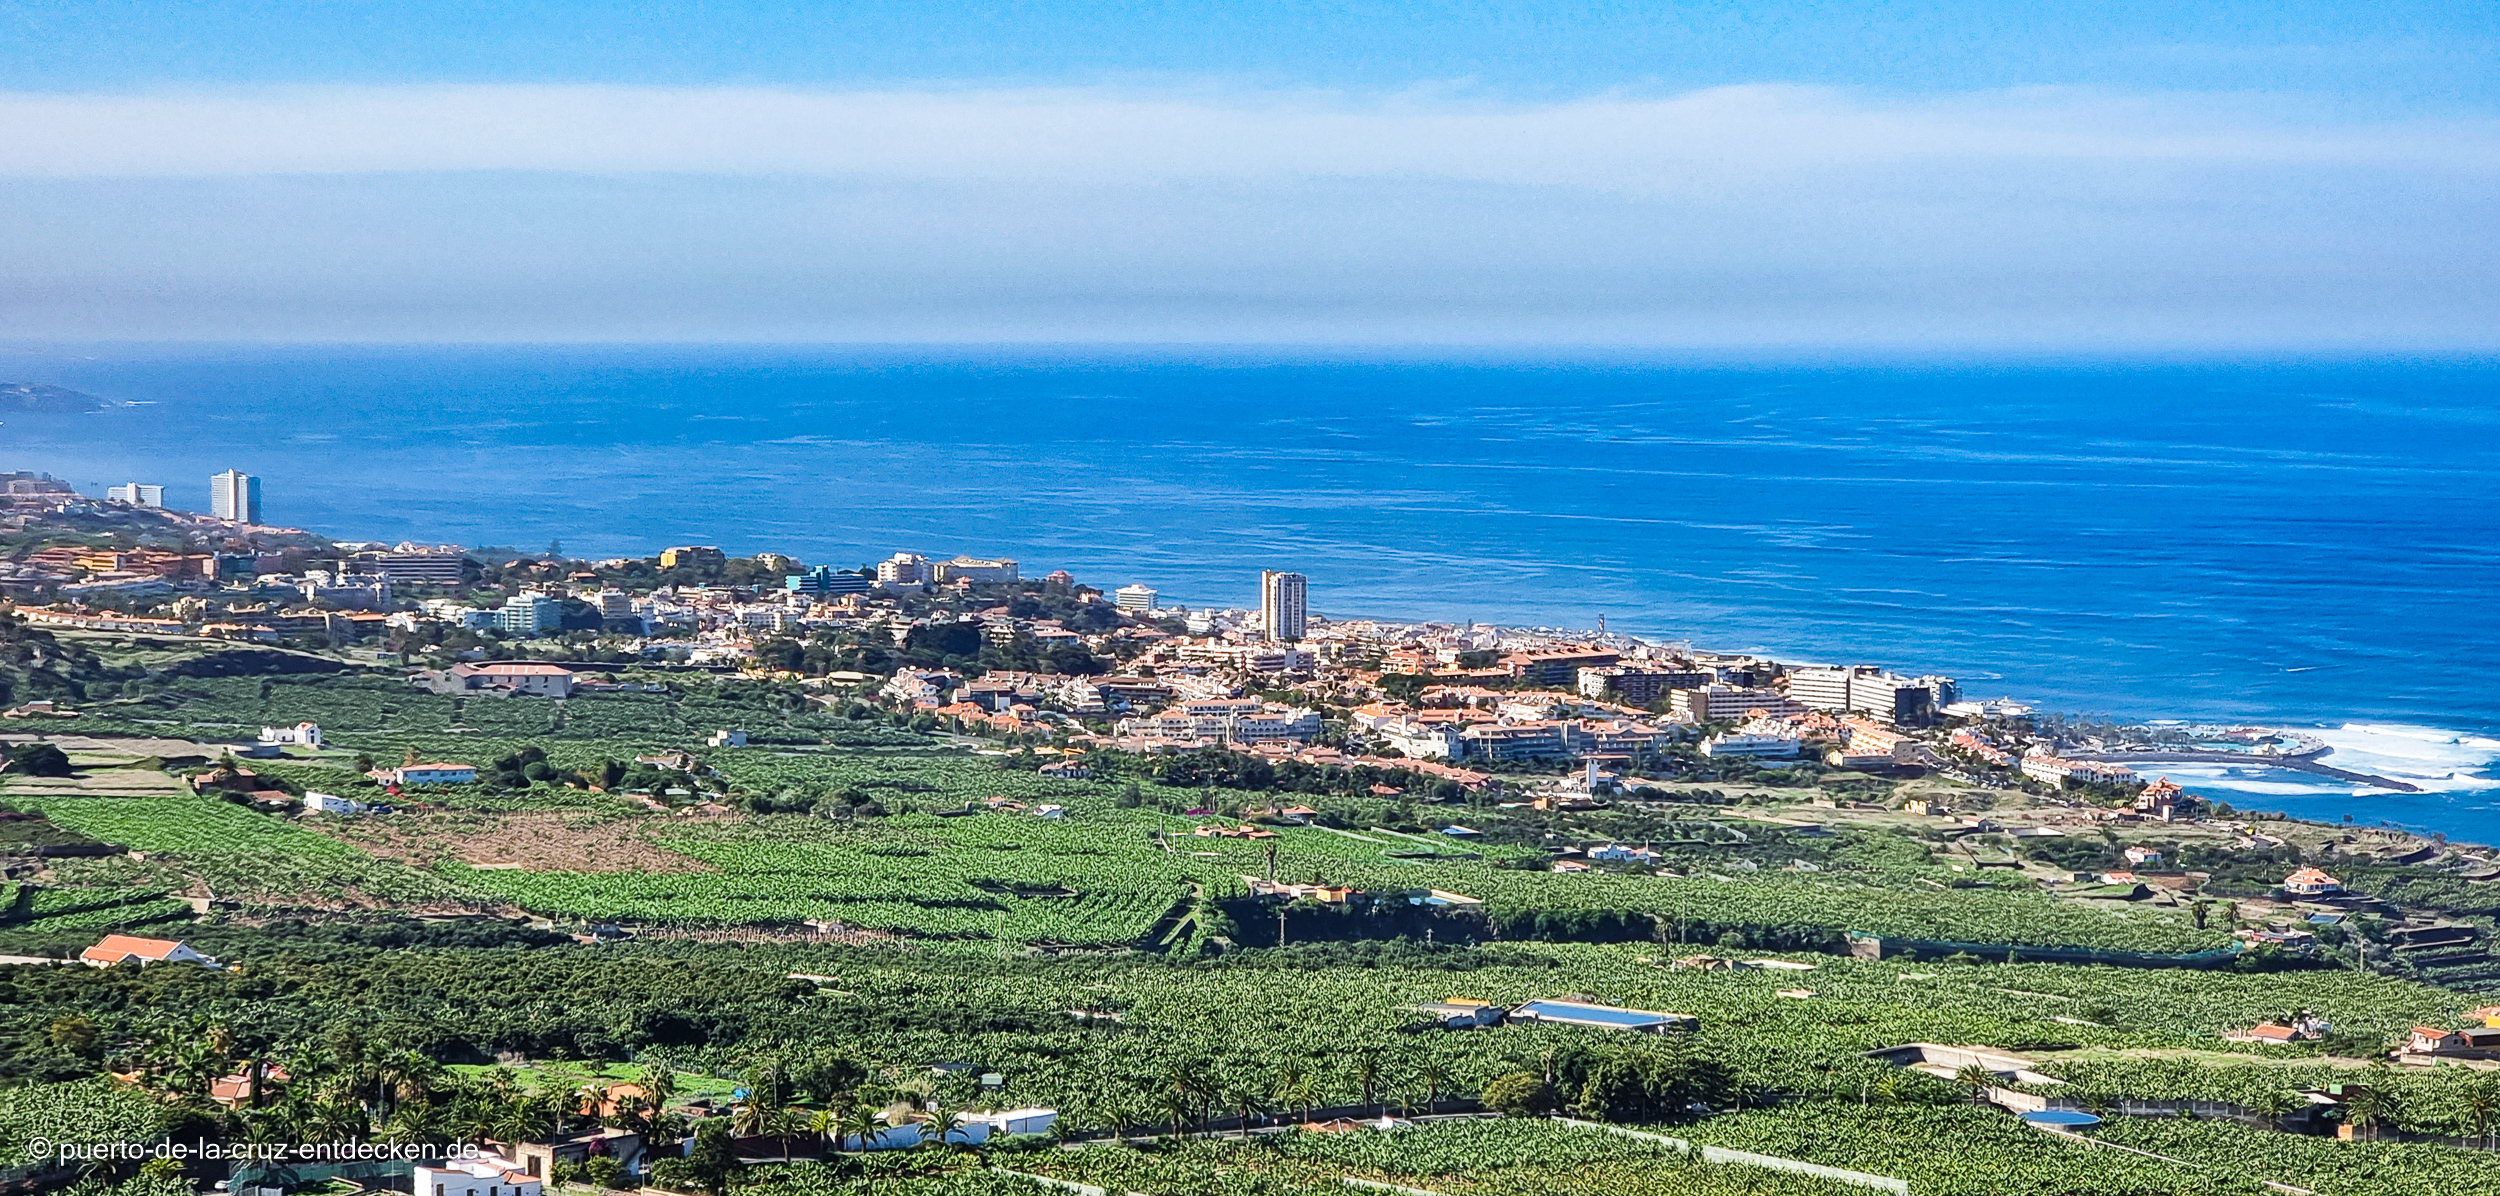 Blick auf Puerto: Im Vordergrund ist der Ortsteil La Paz zu sehen.